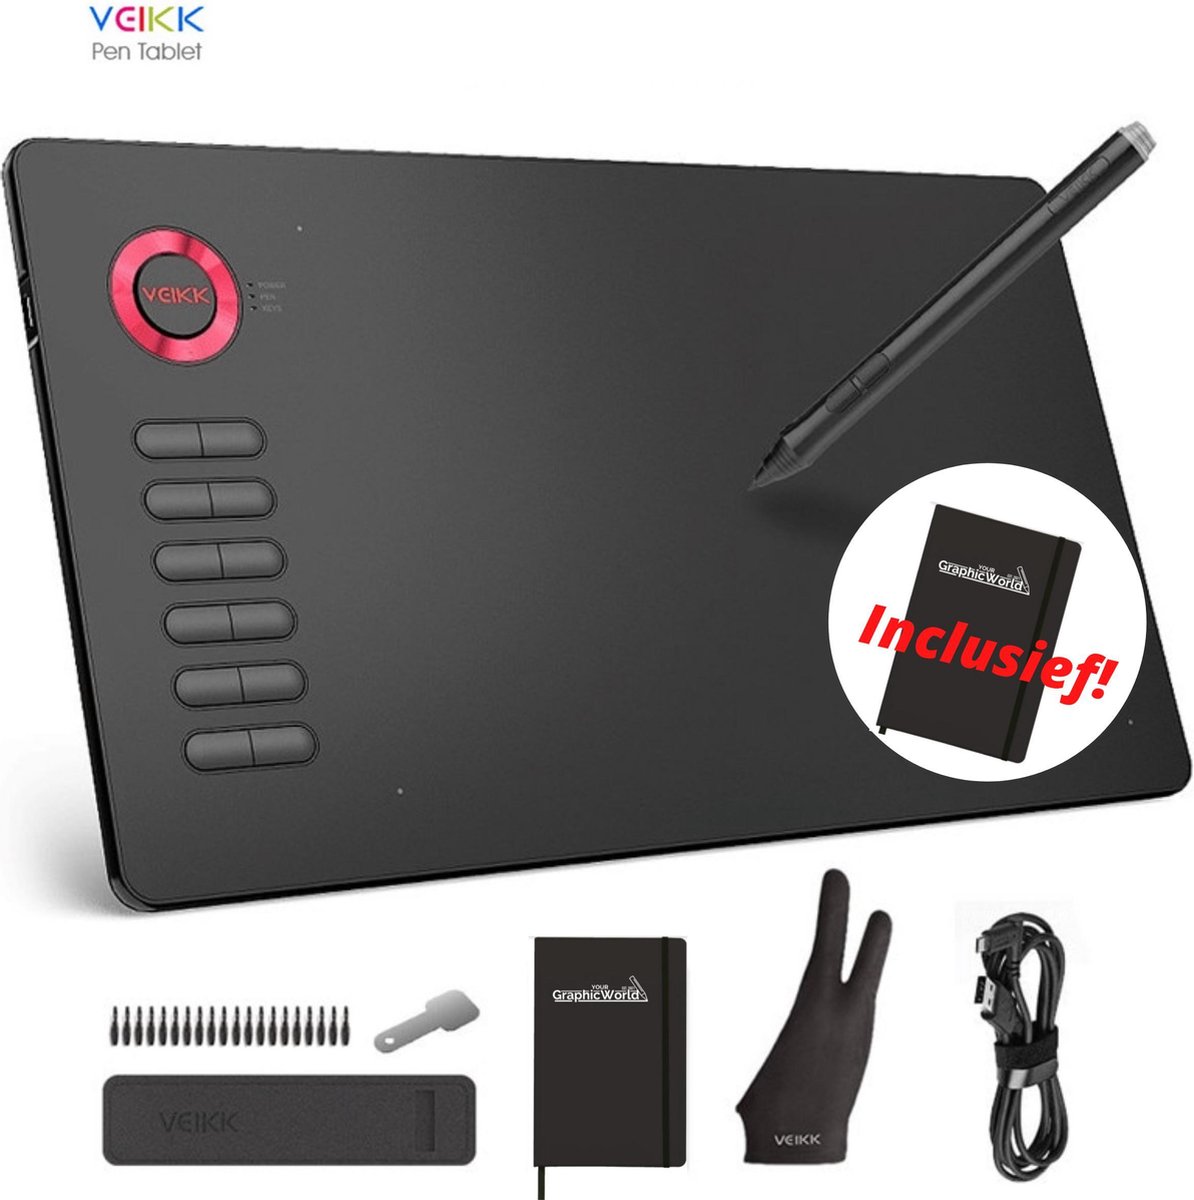 Tekentablet Veikk A15 Rood inclusief beschermhoes - 10x6 inch - 5080 Lpi - grafische XL teken tablet - Batterij vrije pen - 12 sneltoetsen - tekenhandschoen